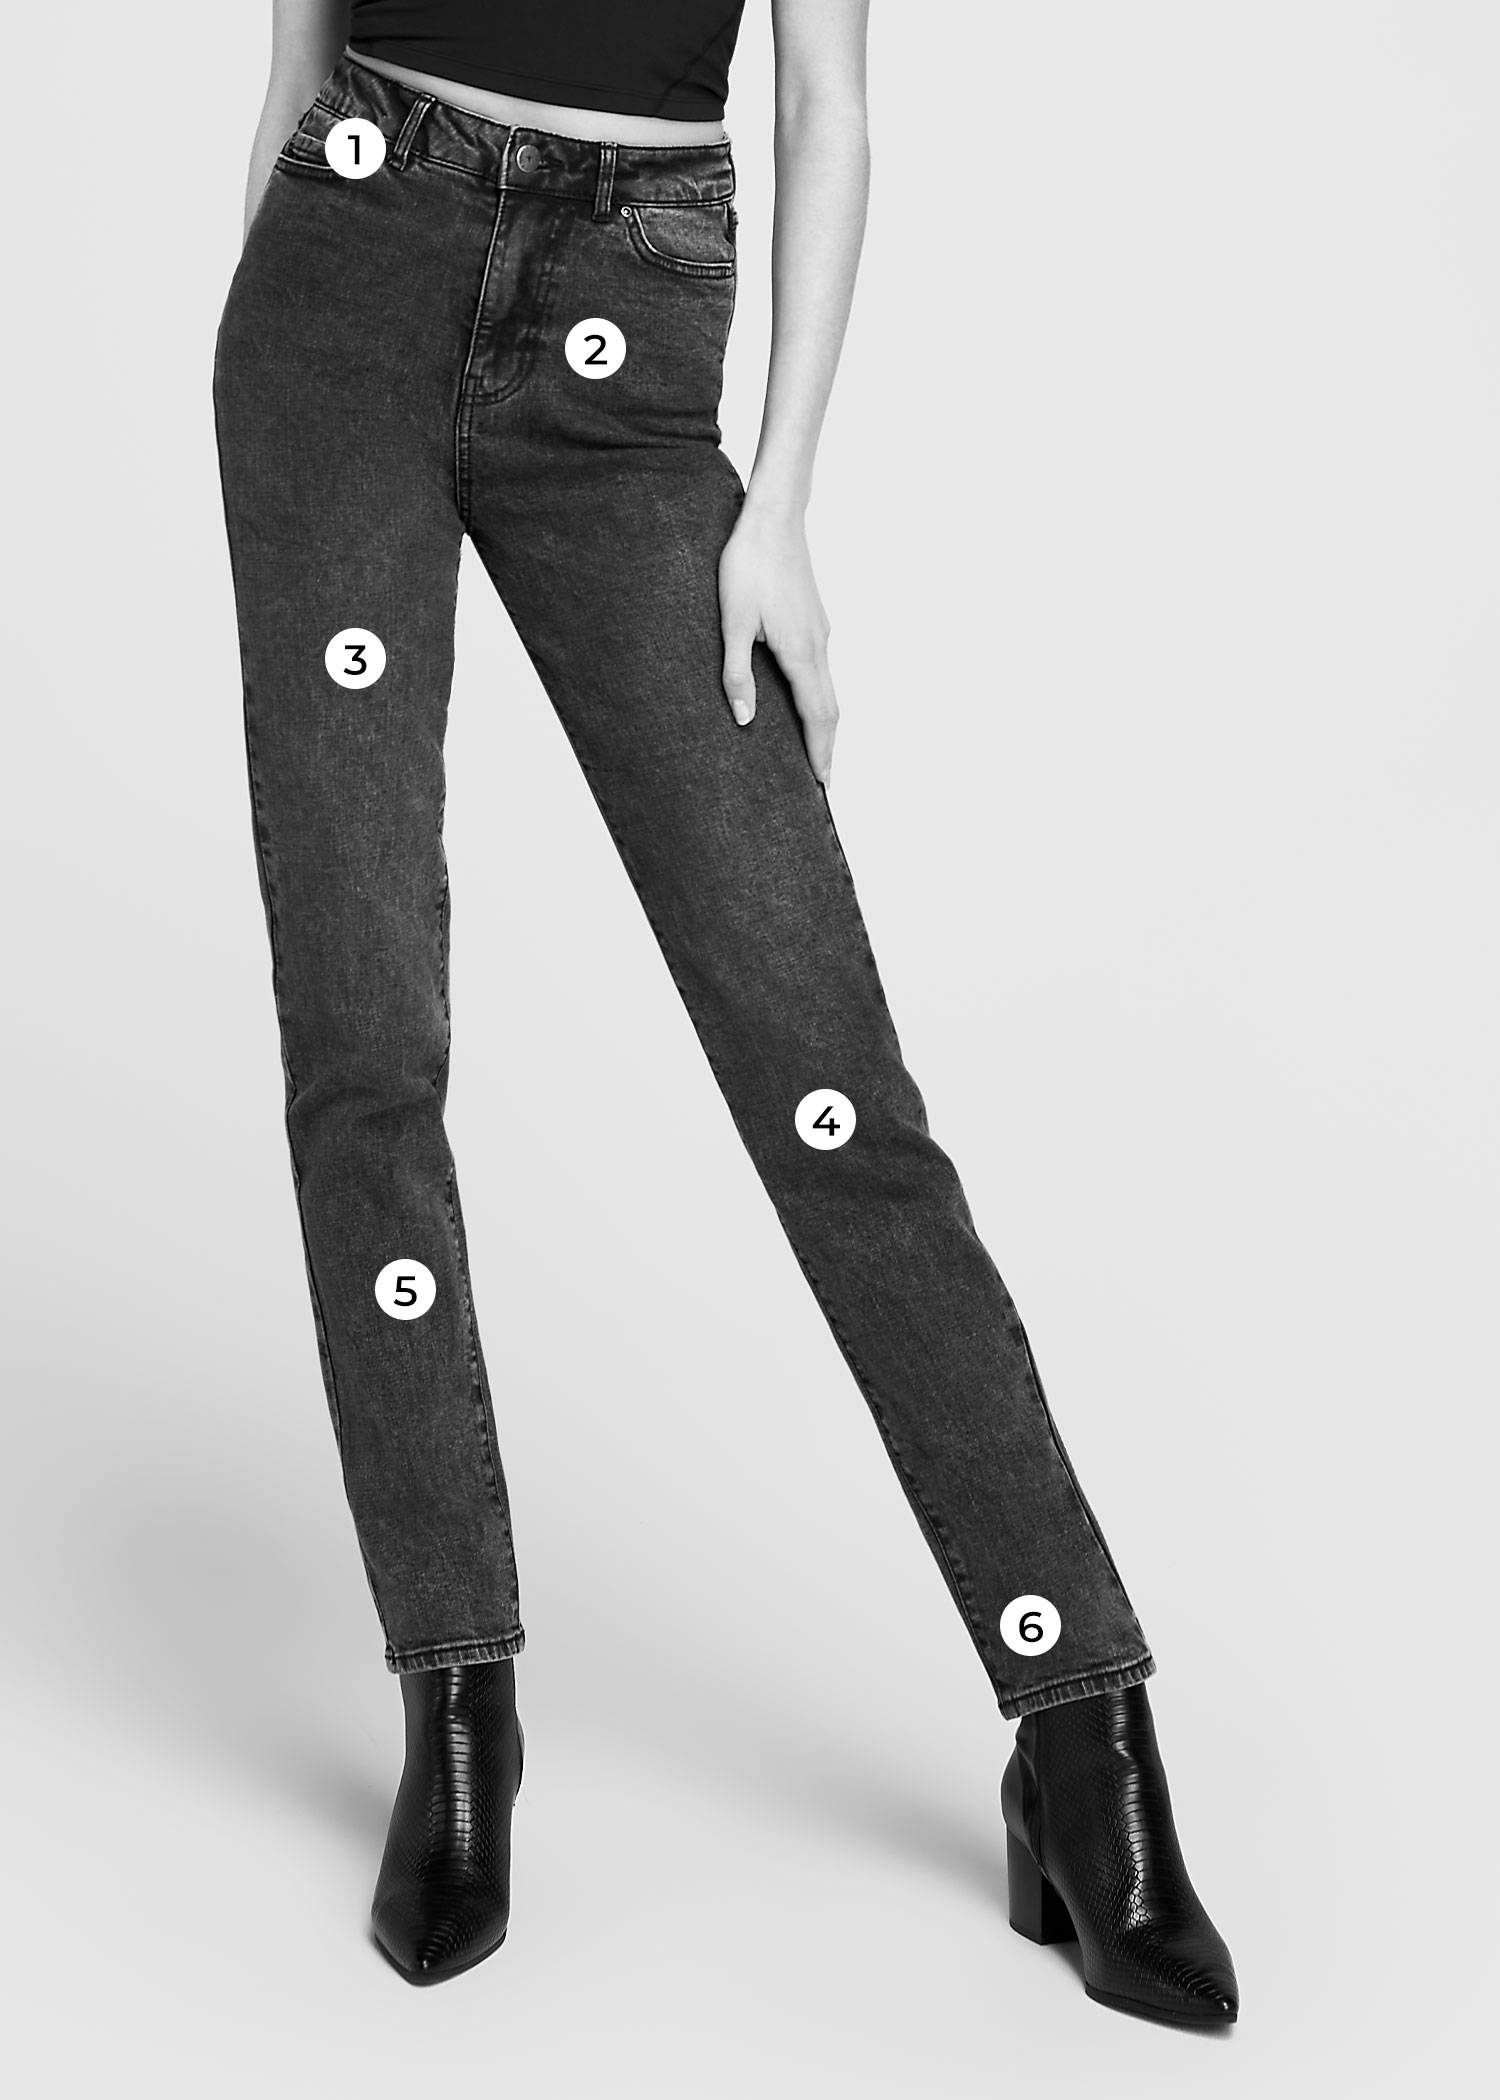 Tall model wearing black jeans